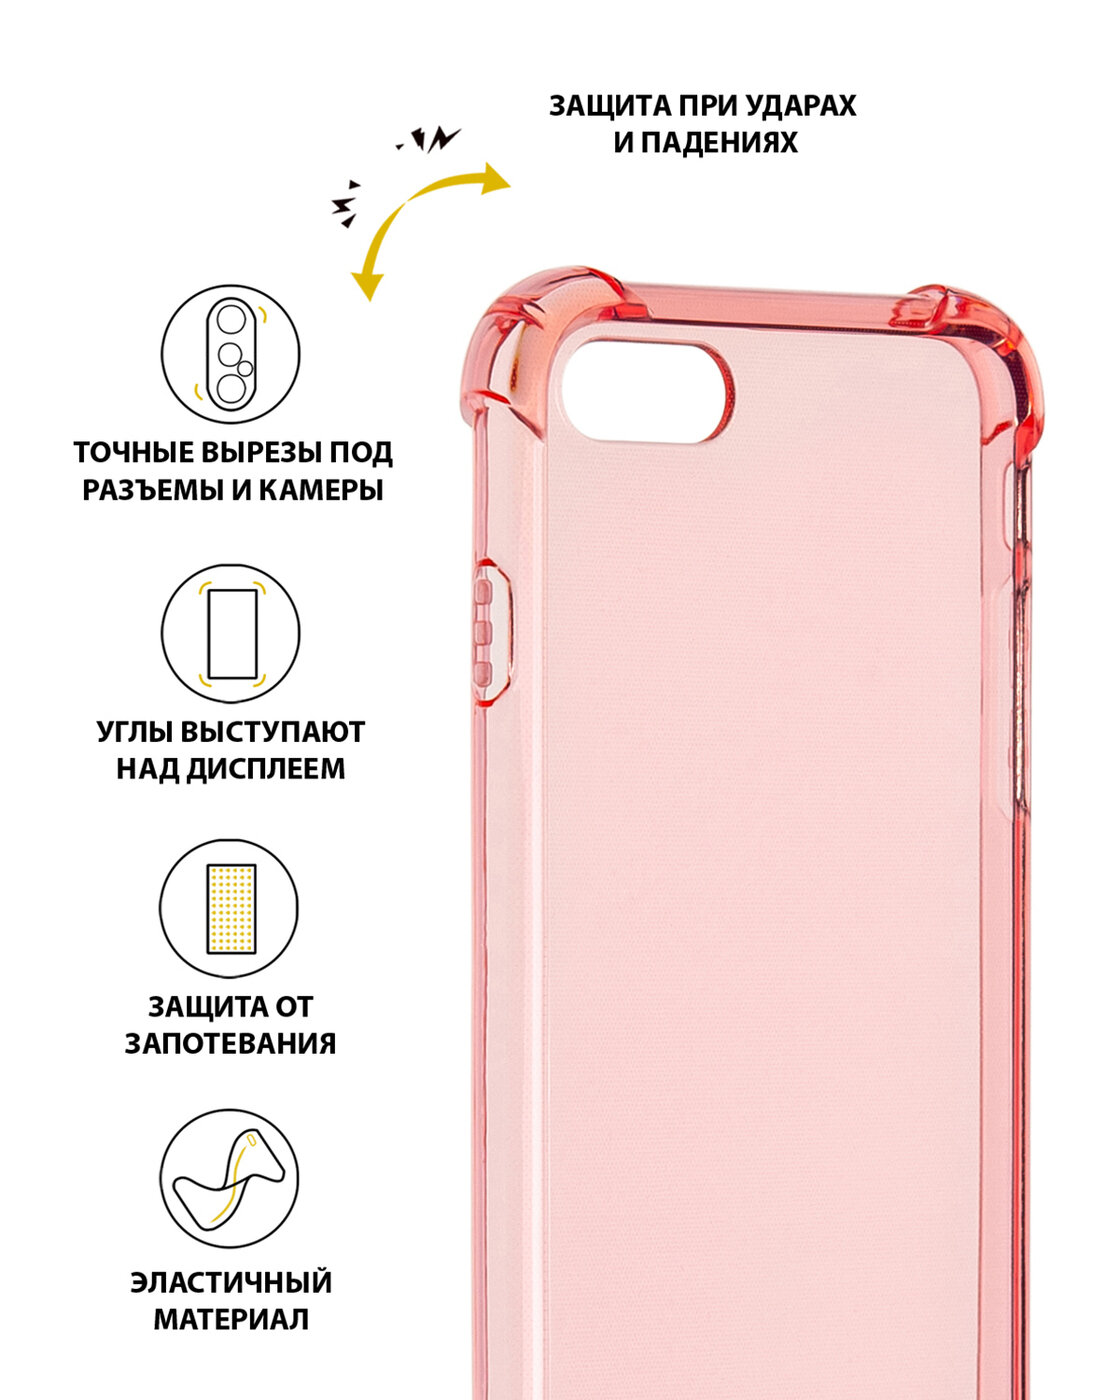 Чехол силиконовый на телефон Apple iPhone SE 2020 7, SE 2020 8 прозрачный противоударный, бампер с усиленными углами для смартфона Айфон СЕ 7, СЕ 8, розовый